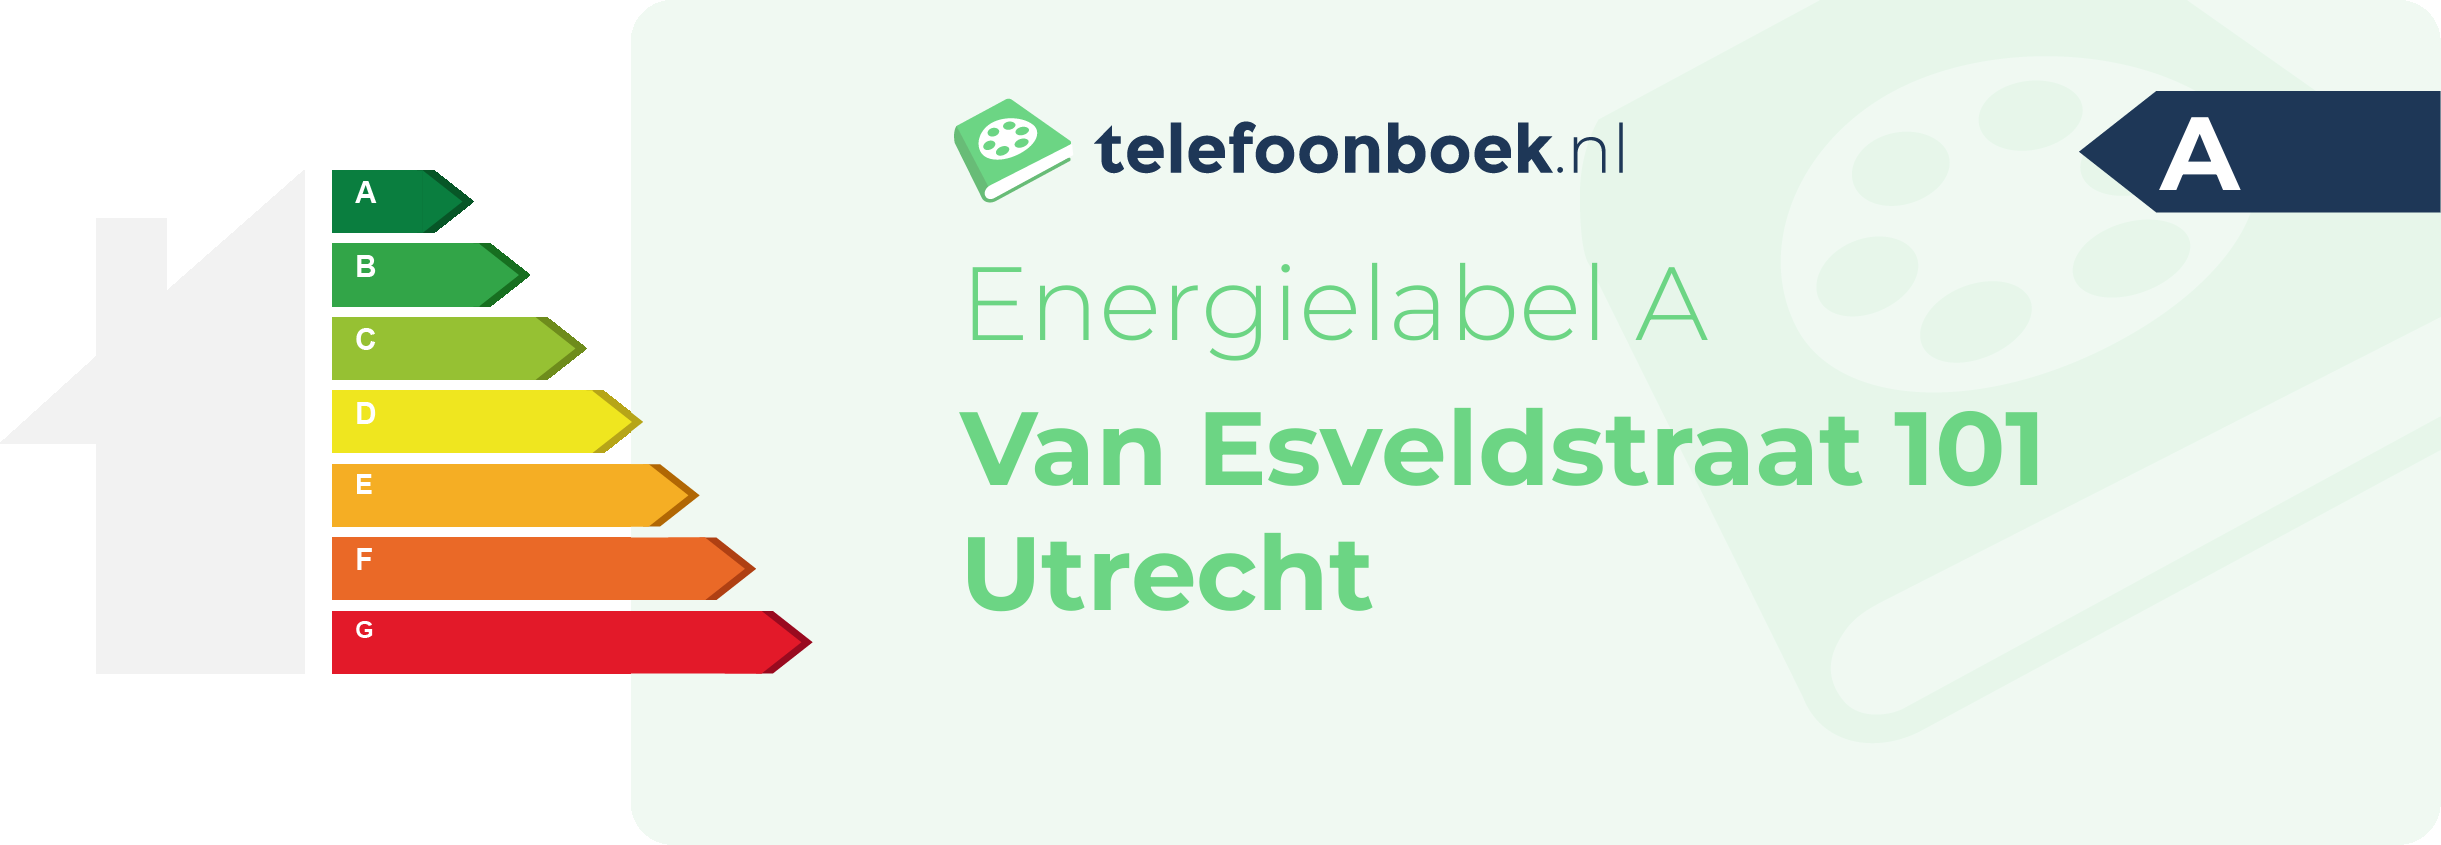 Energielabel Van Esveldstraat 101 Utrecht